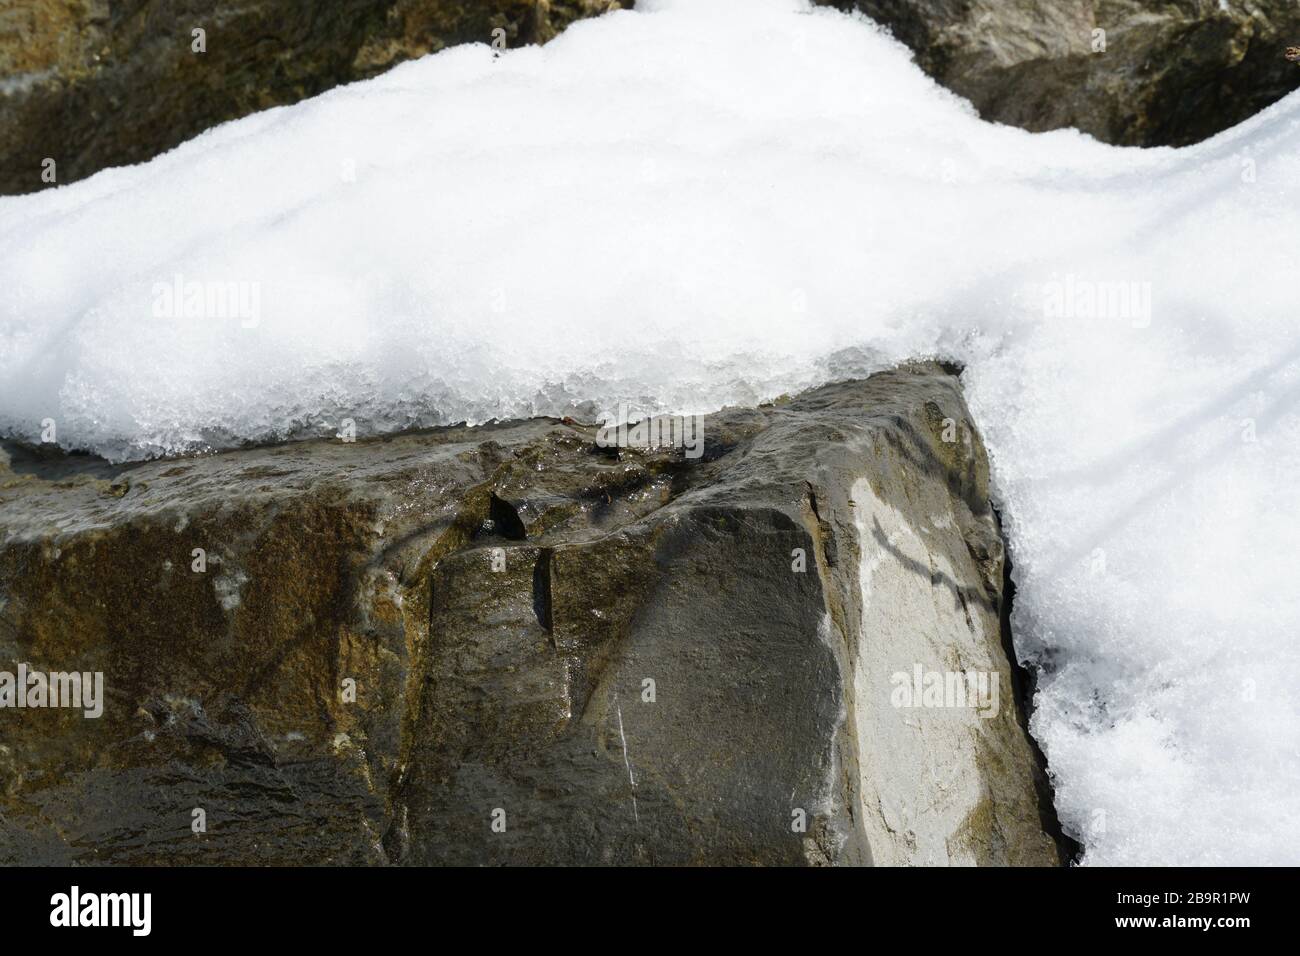 Uno strato di neve che si scioglie su una roccia in tempo di scongelamento. La roccia è bagnata, l'inverno sta per terminare. La primavera è in arrivo. Foto Stock